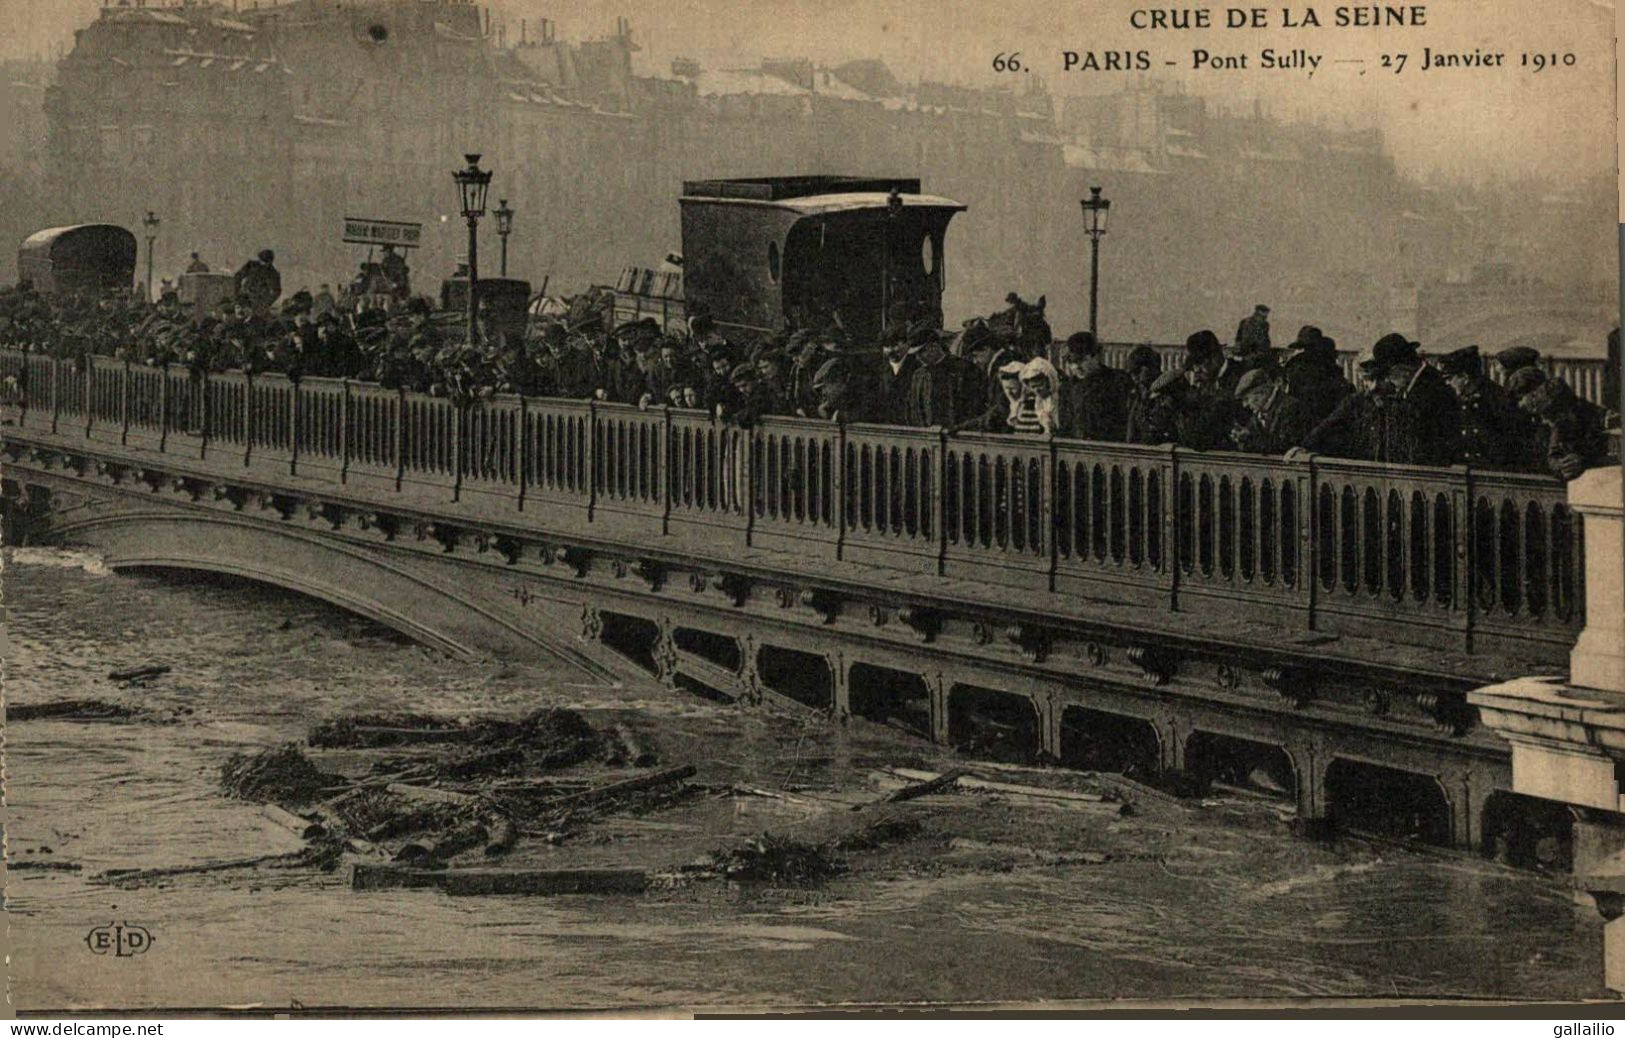 PARIS CRUE DE LA SEINE PONT SULLY - Paris Flood, 1910